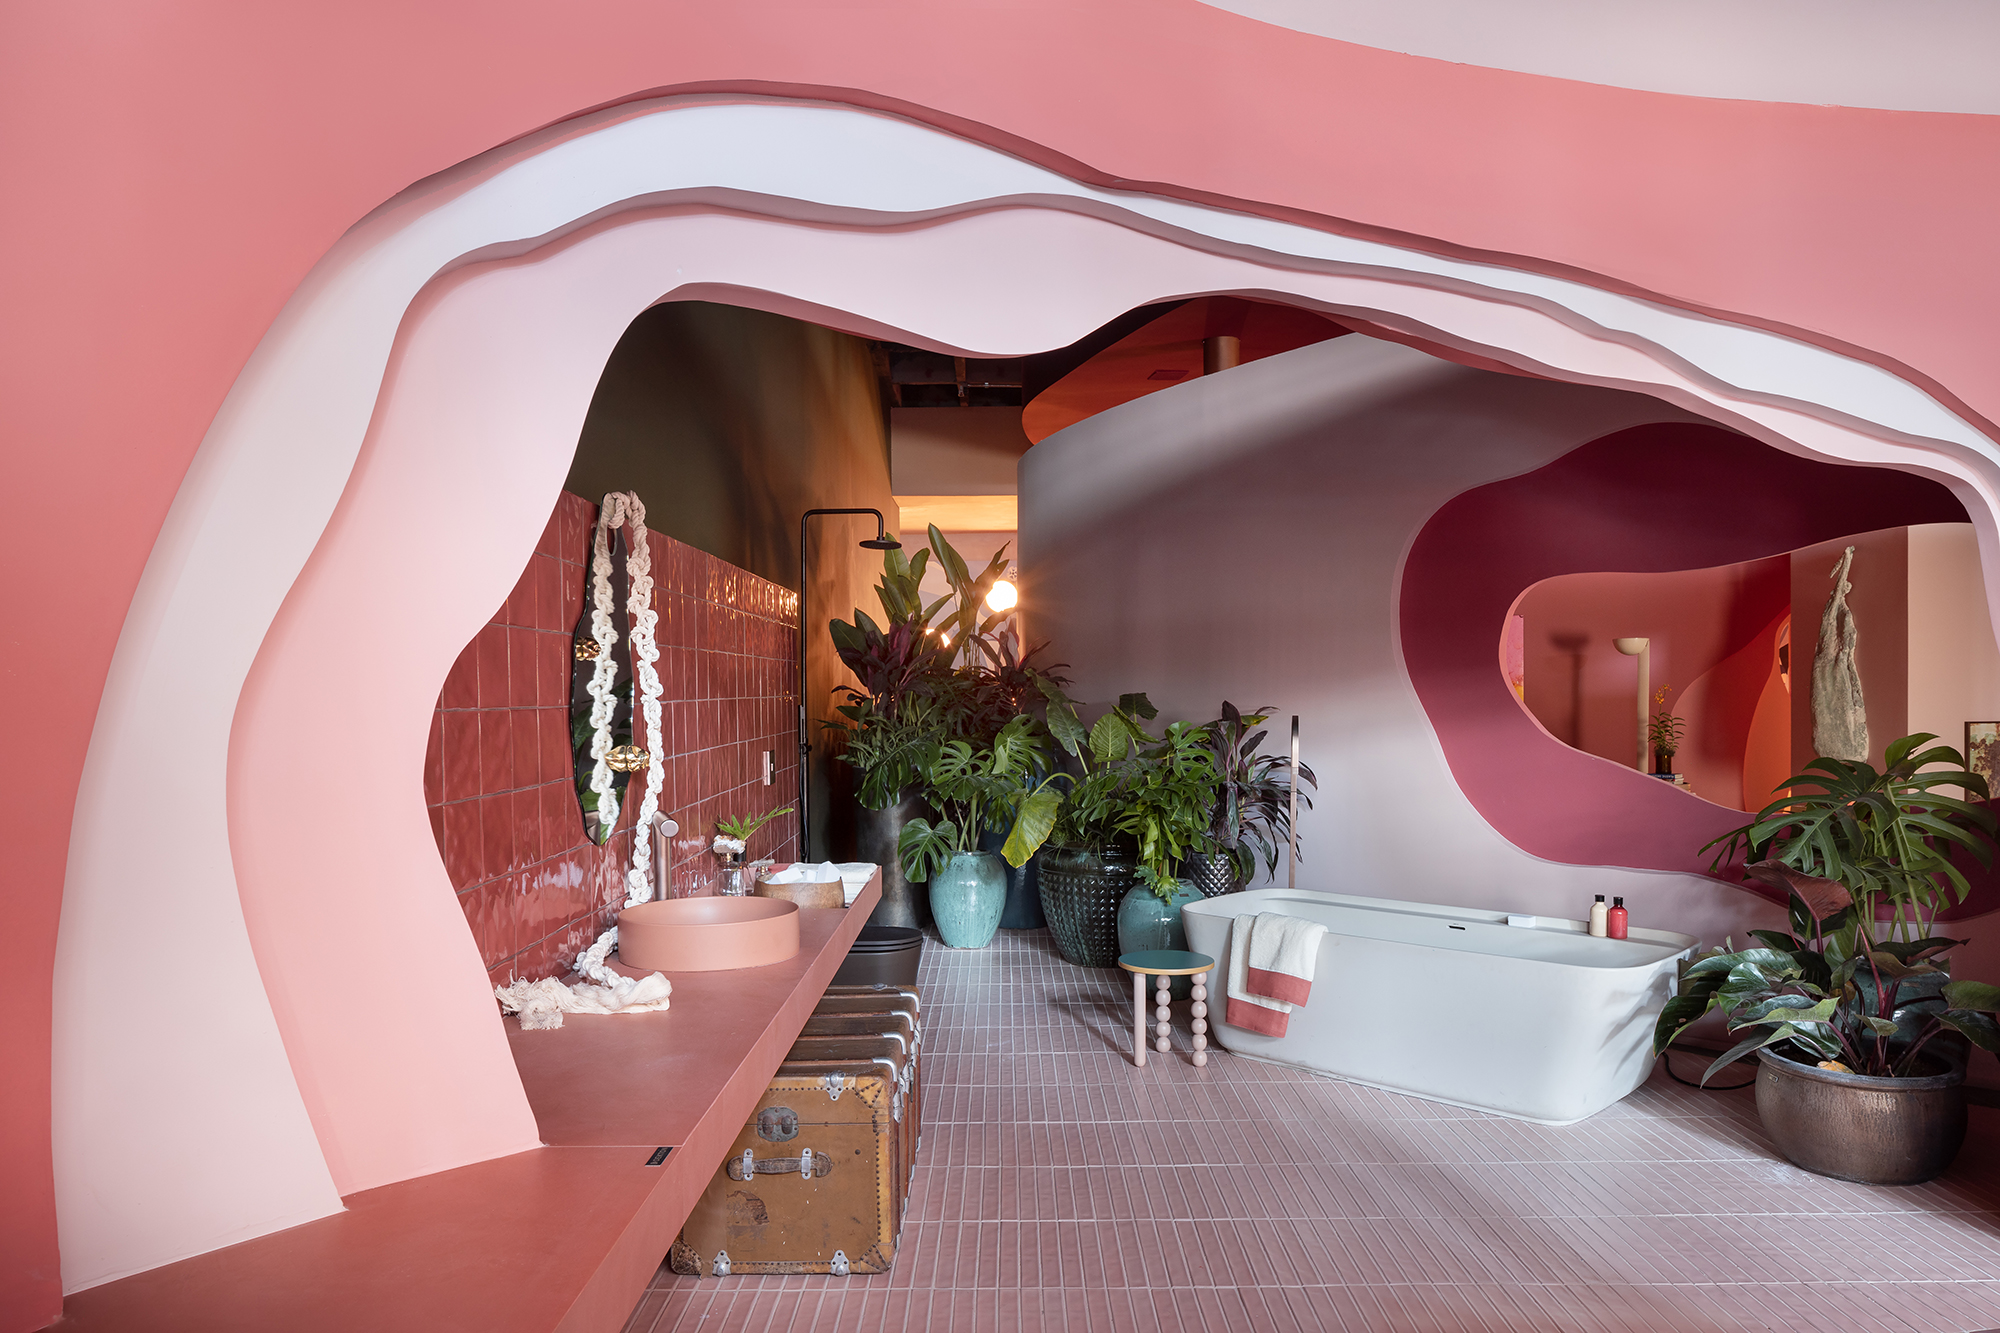 Casa rosa de 225 m² com cara de brinquedo feita para moradora de 64 anos. Projeto de Ricardo Abreu para a CASACOR SP 2023. Na foto, banheiro com bancada e cuba rosa. Banheira de apoio.